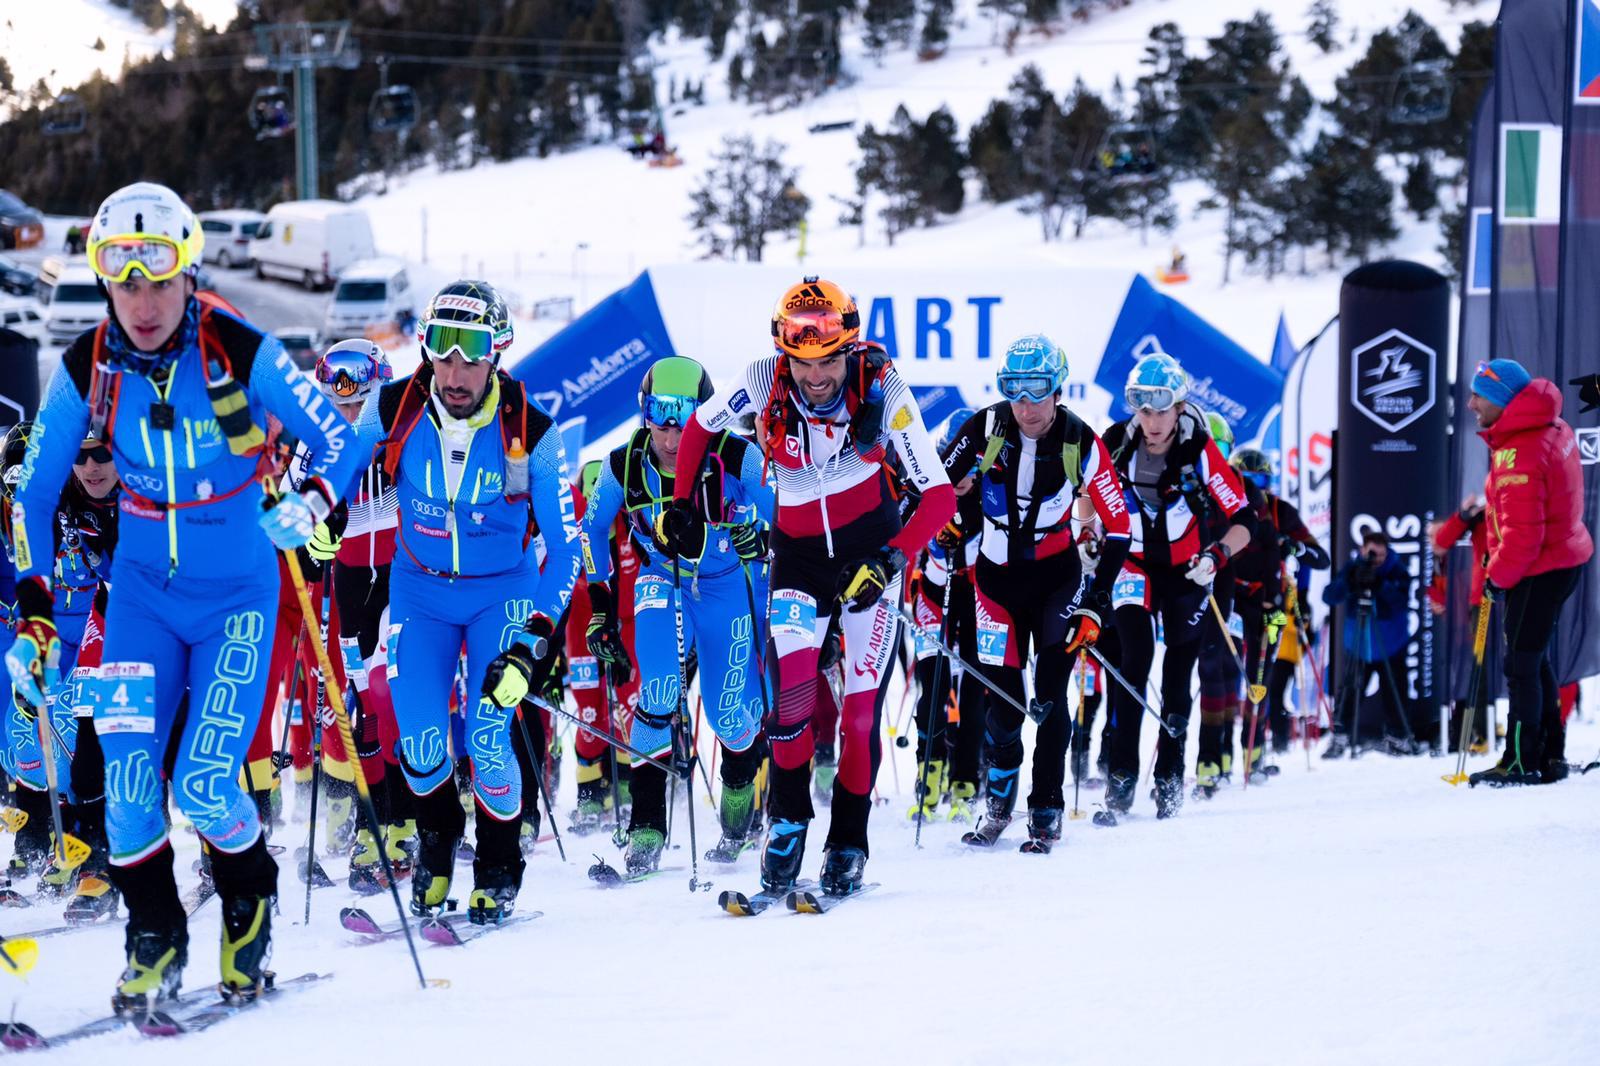 Weltcup Andorra 2019 SKIMO Austria Motiv 78 Bild Bernhard Hörtnagl LR